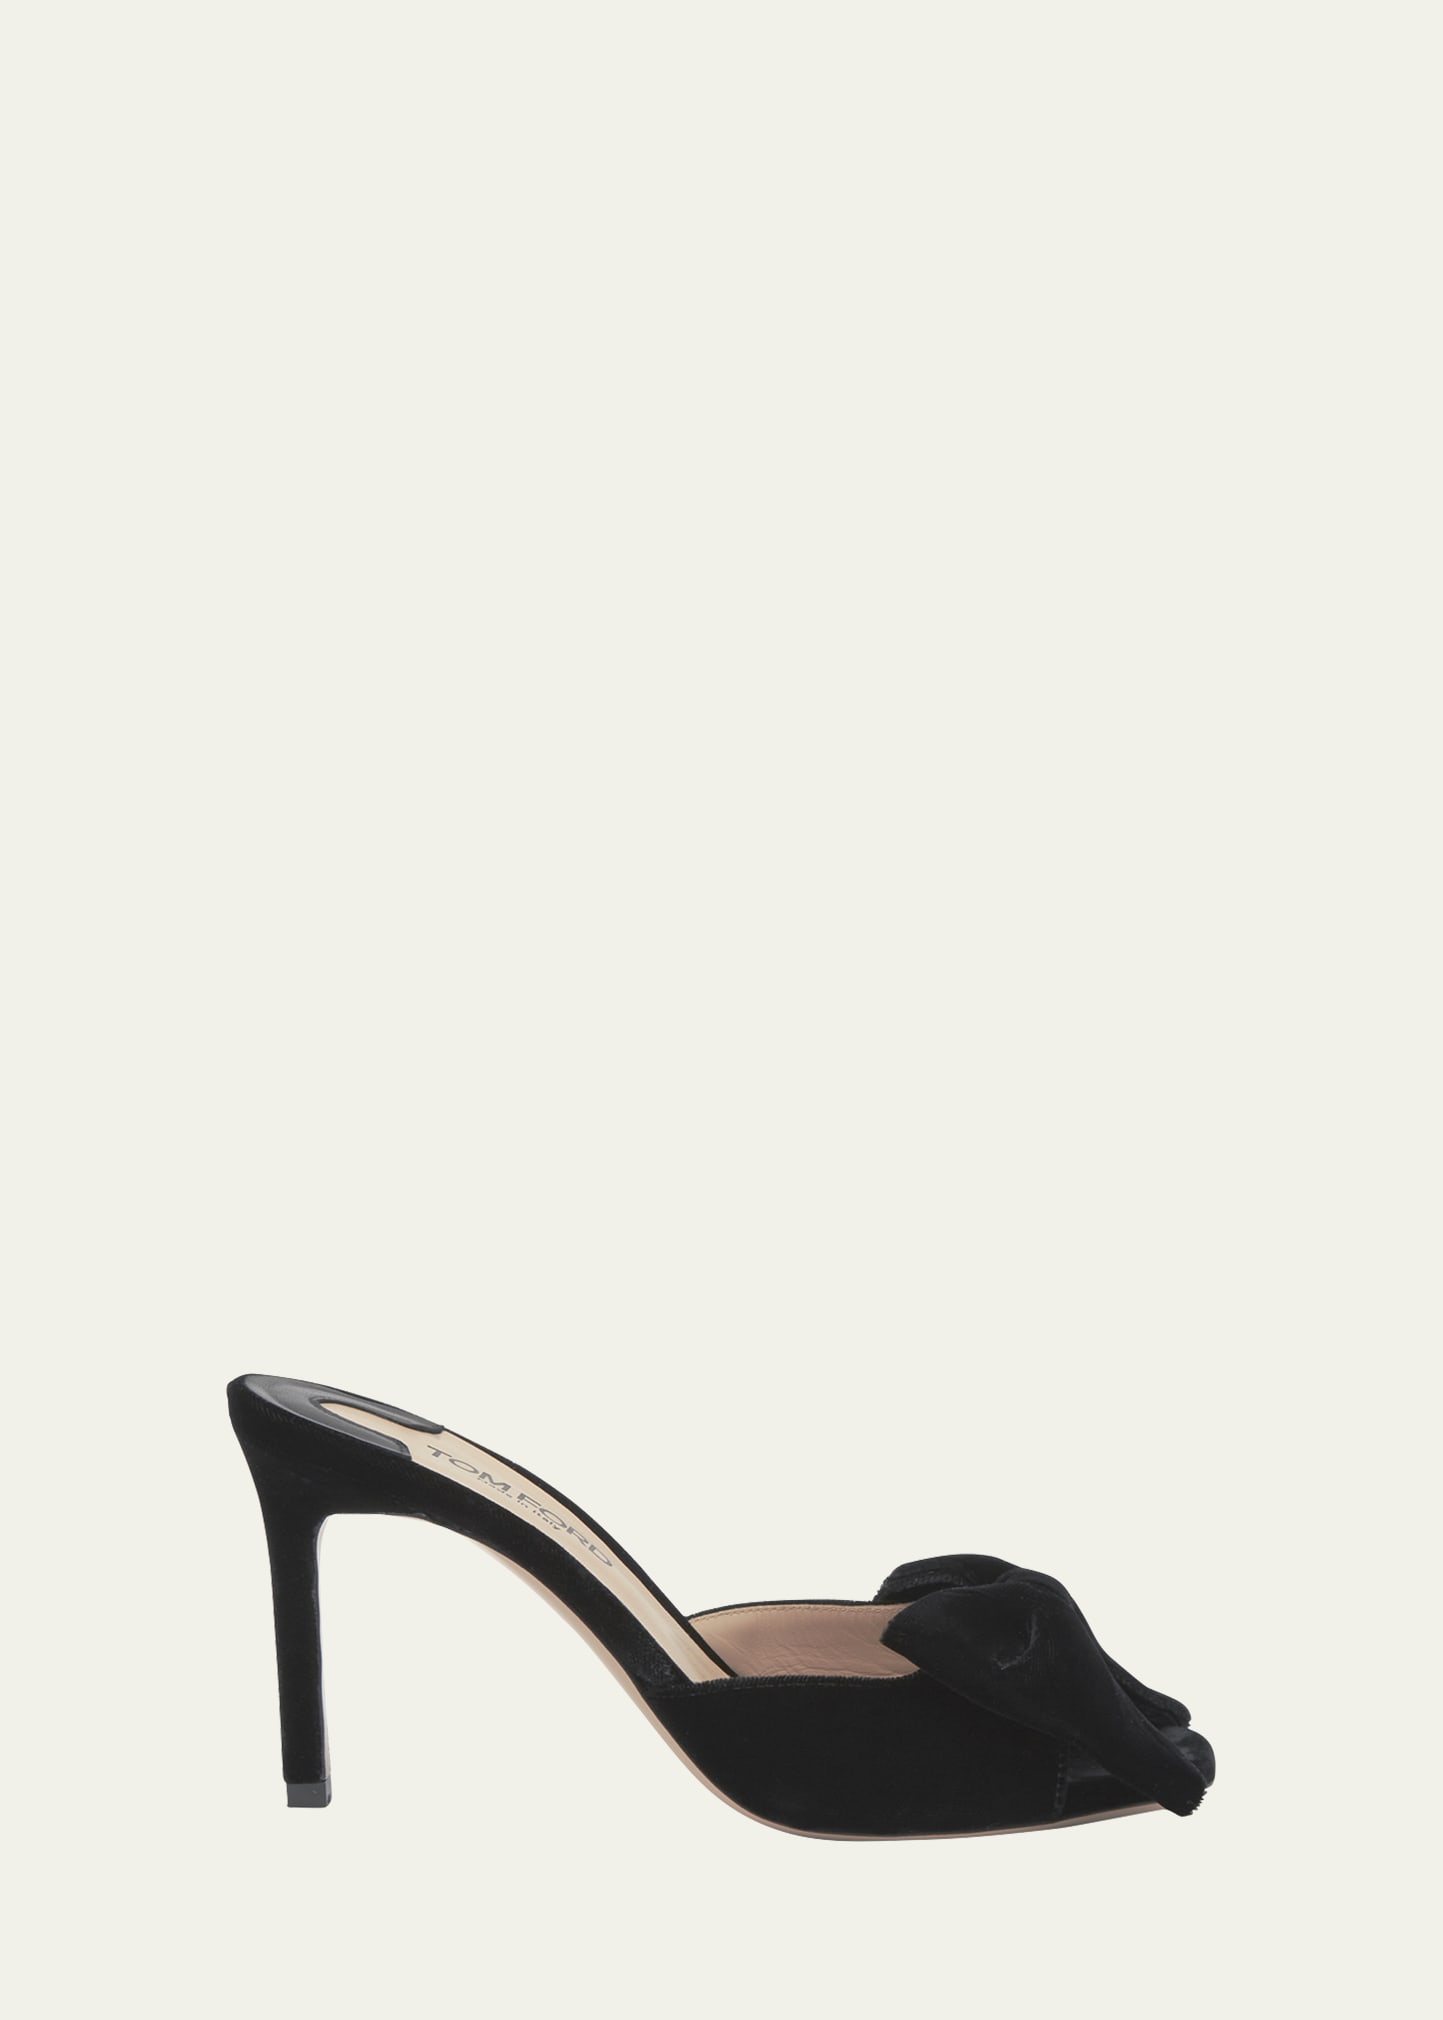 TOM FORD Velvet Bow Stiletto Mule Sandals | Bergdorf Goodman